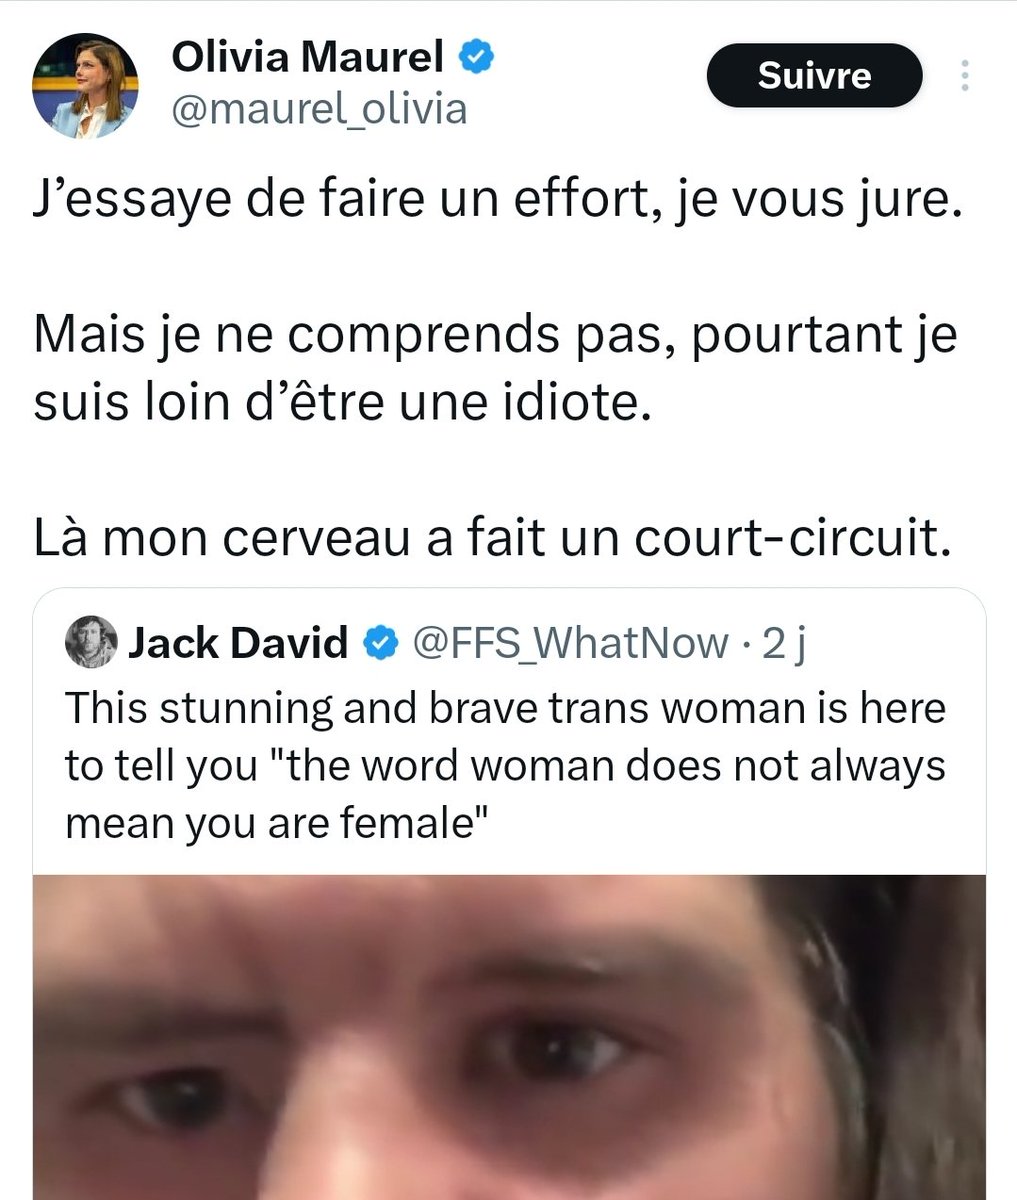 La Ministre de l'Égalité Aurore Bergé a reçu aujourd'hui la militante anti-trans et anti-GPA Olivia Maurel. Celle-ci considère que 'les femmes trans sont des hommes' et que les enfants trans sont une 'invention américaine'.